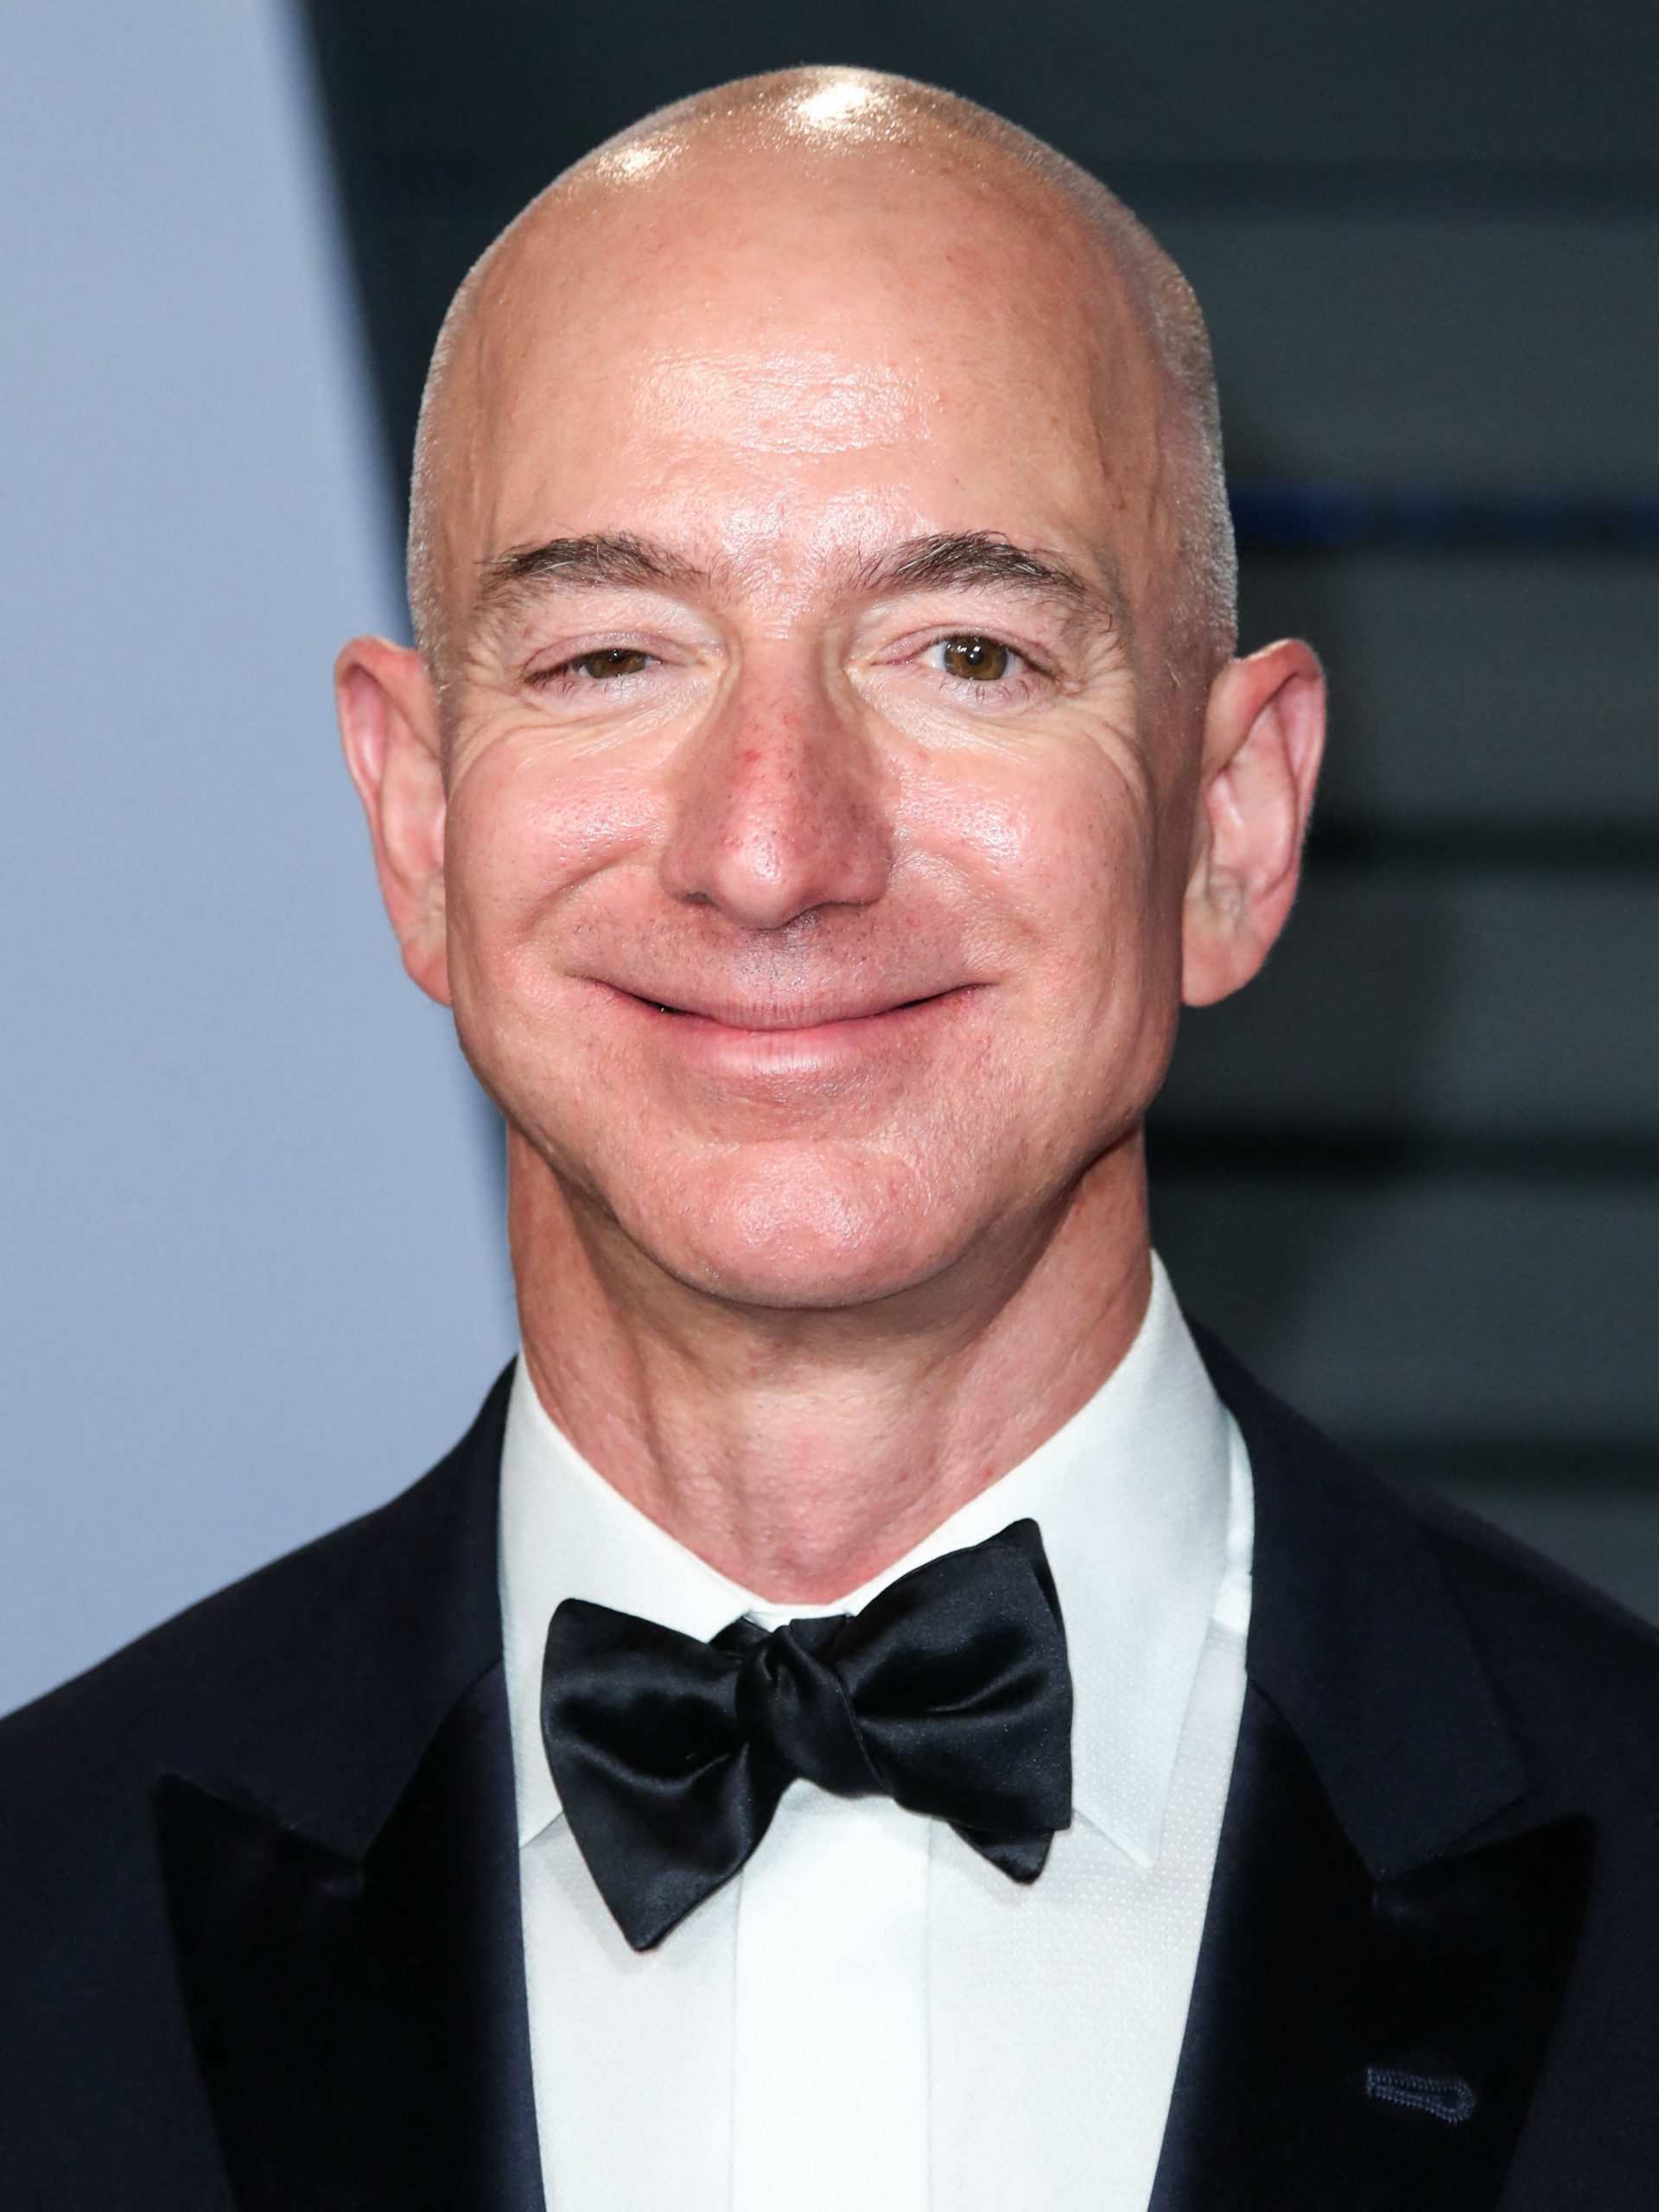 Jeff Bezos deja su puesto en Amazon